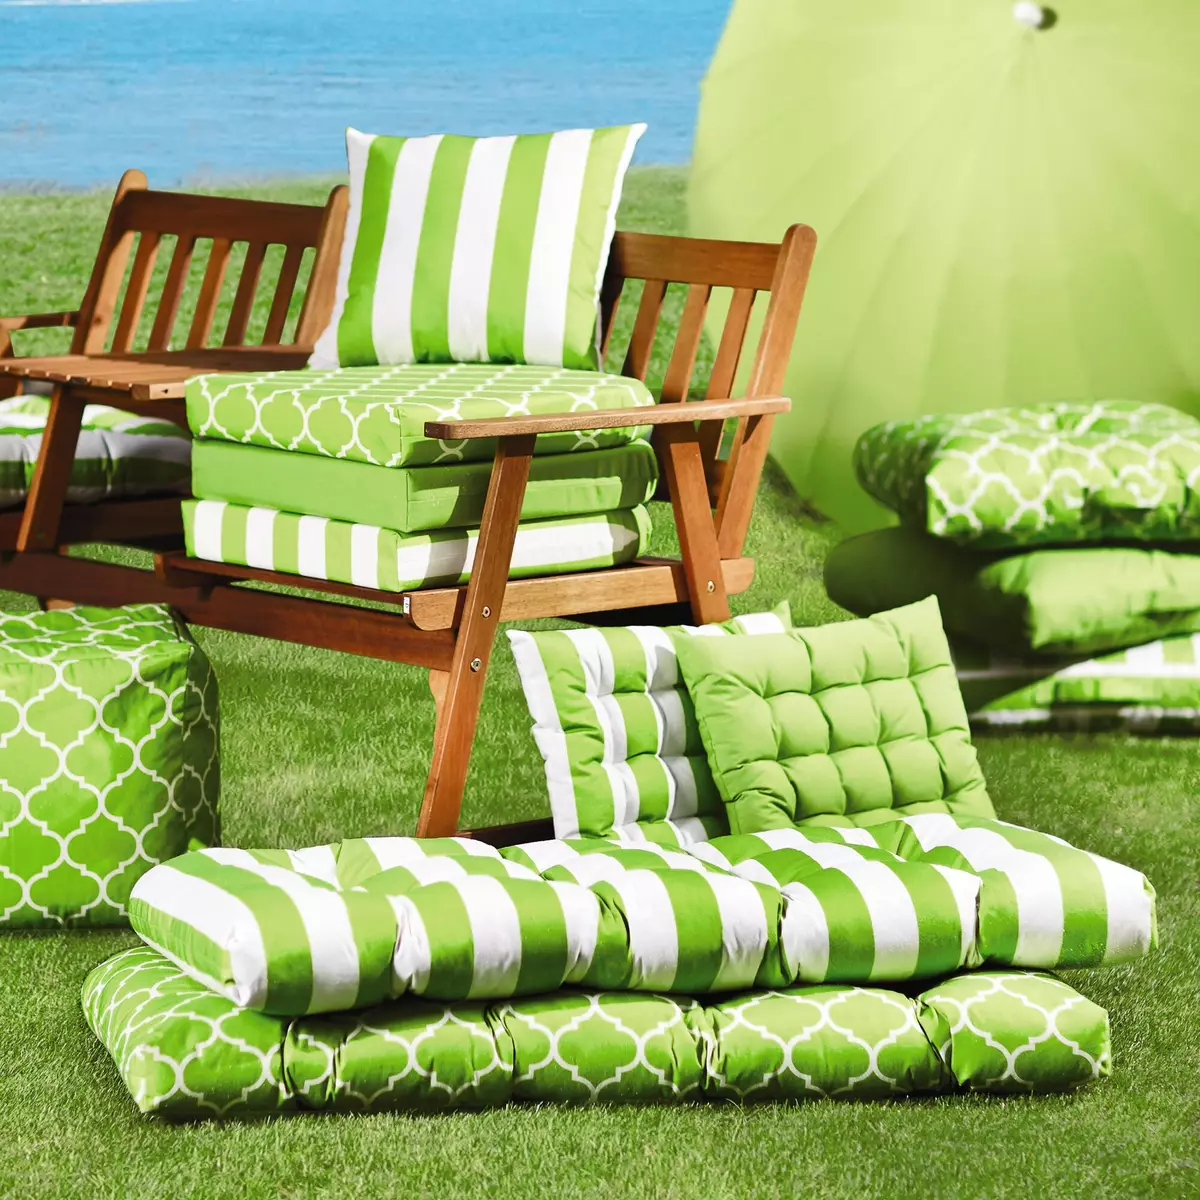 Bahçe mobilyaları için yastıklar: kapaklar, salıncaklar ve koltuklar için yastıklar, ülke mobilyaları için yumuşak sokak modelleri 20710_4